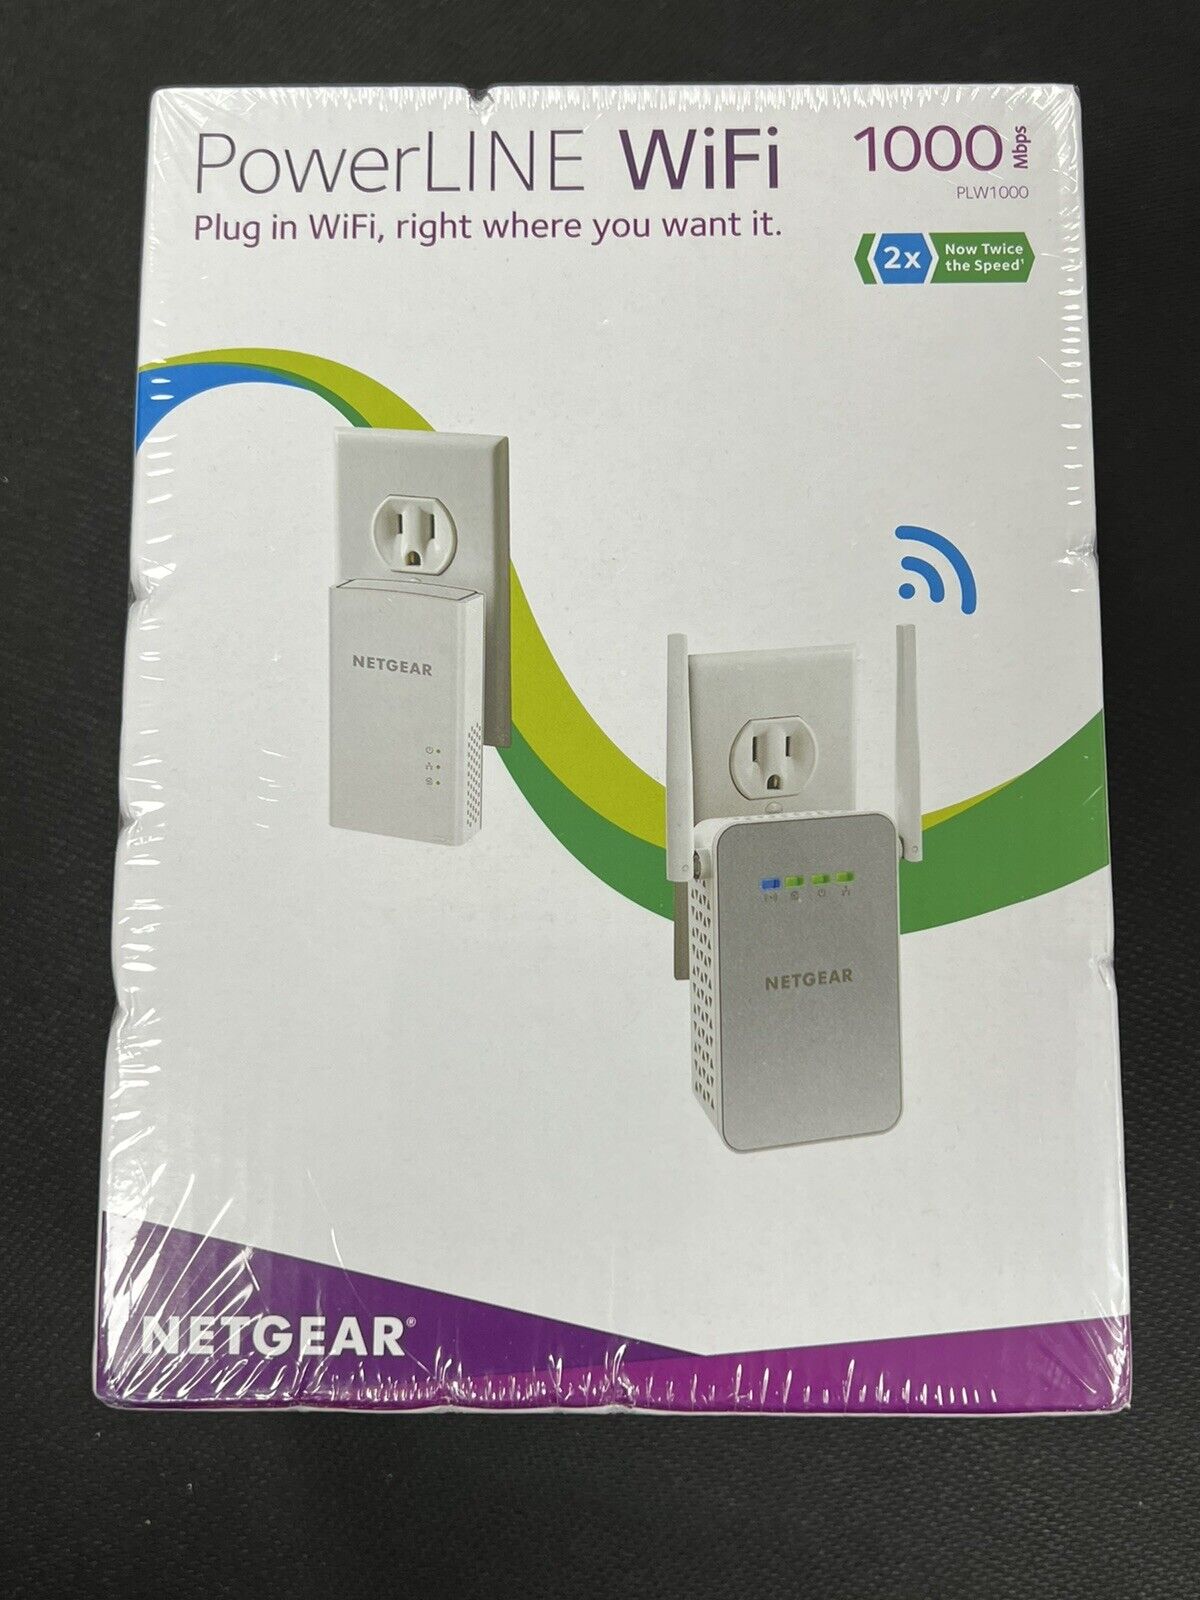 NETGEAR Powerline WiFi (PLW1000-100NAS) - 1000 mbps Wi-Fi Gigabit Port **NEW**